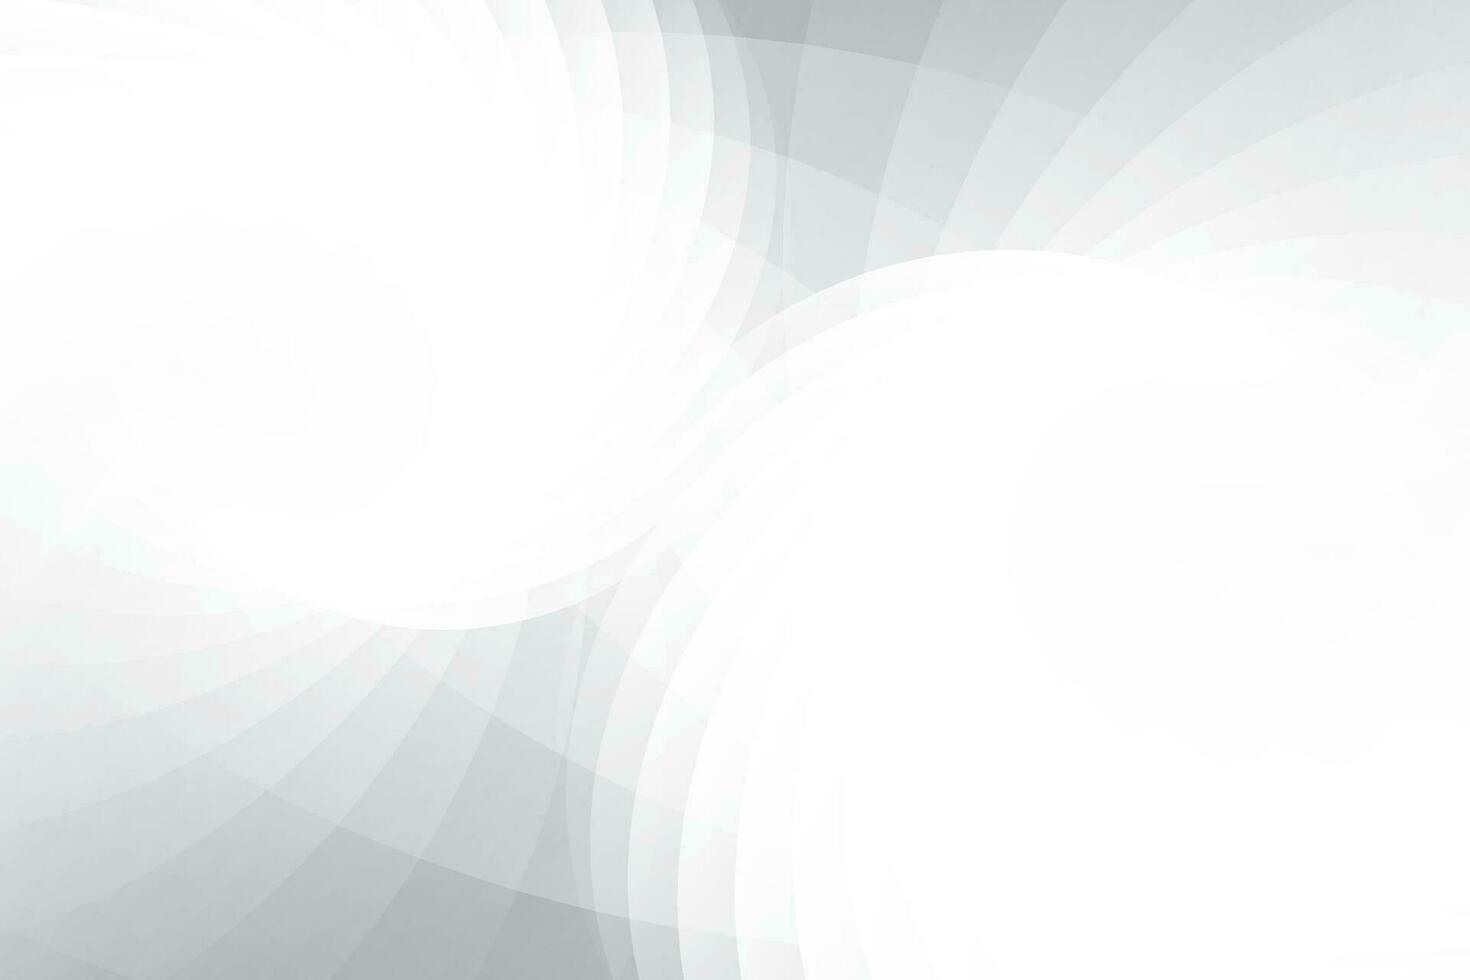 abstract wit en grijs kleur, modern ontwerp strepen achtergrond met meetkundig ronde vorm geven aan. vector illustratie.